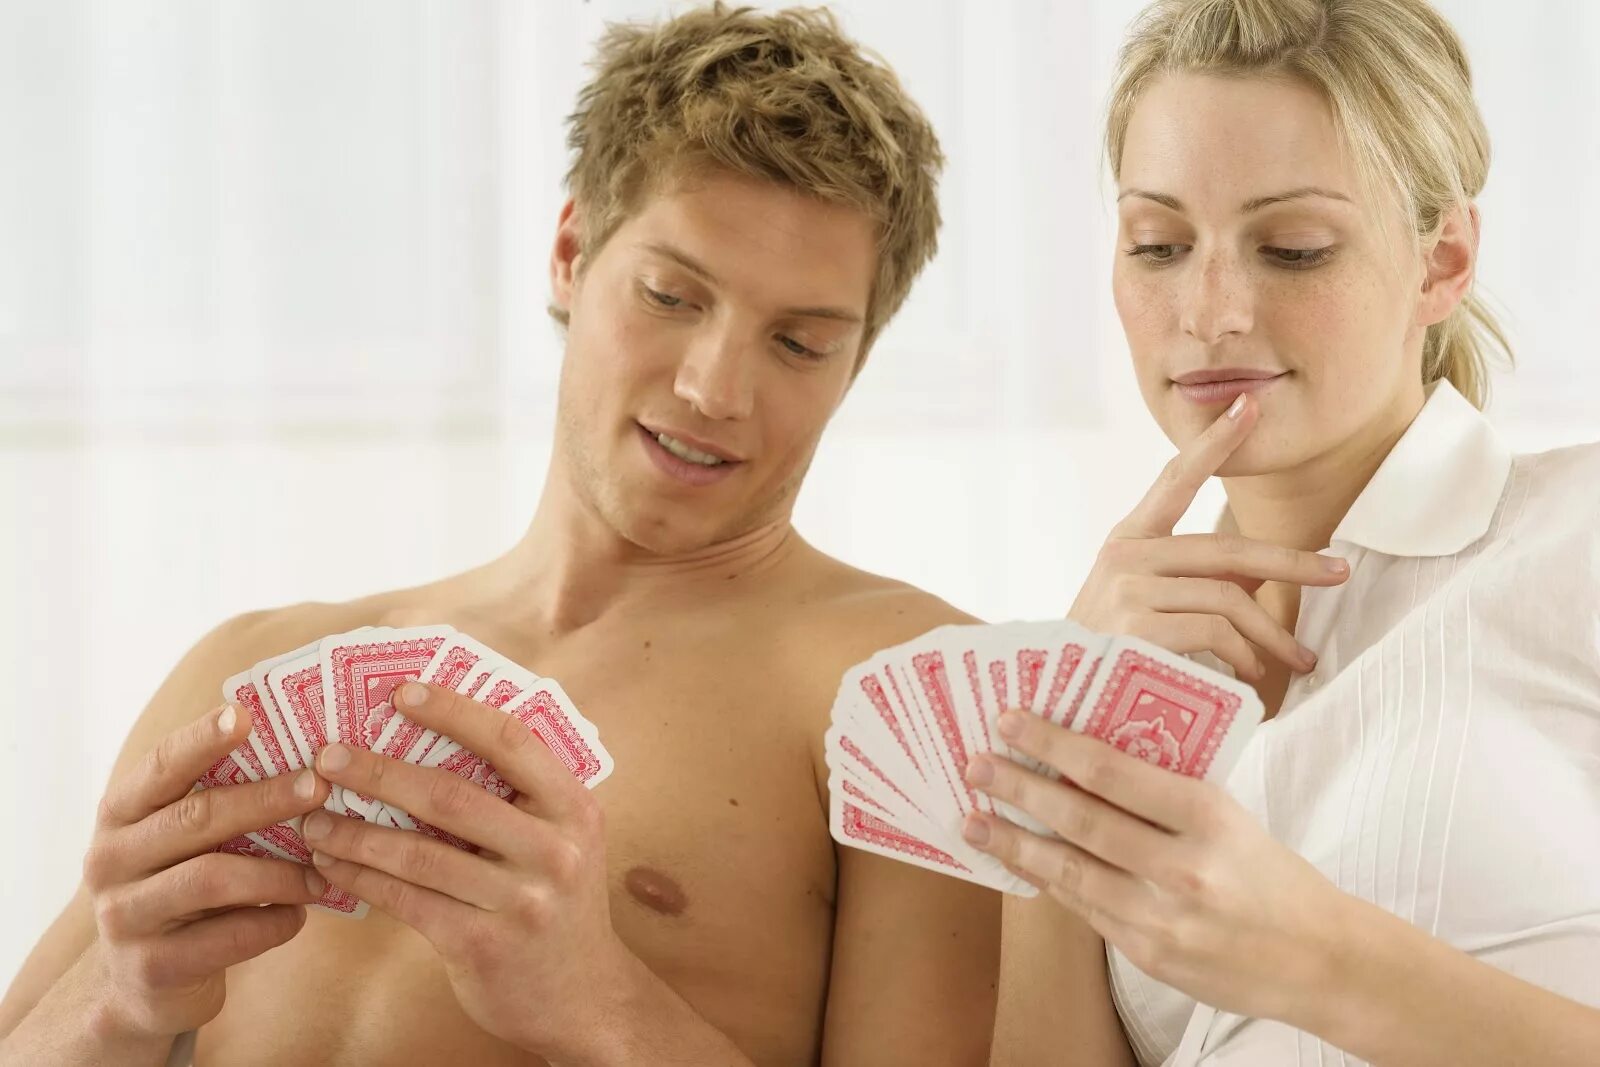 Раздевание женщины мужчиной. Мужчина и женщина играют в карты. Парень с девушкой играют в карты. Игры для супругов. Мужчина играет с женщиной.